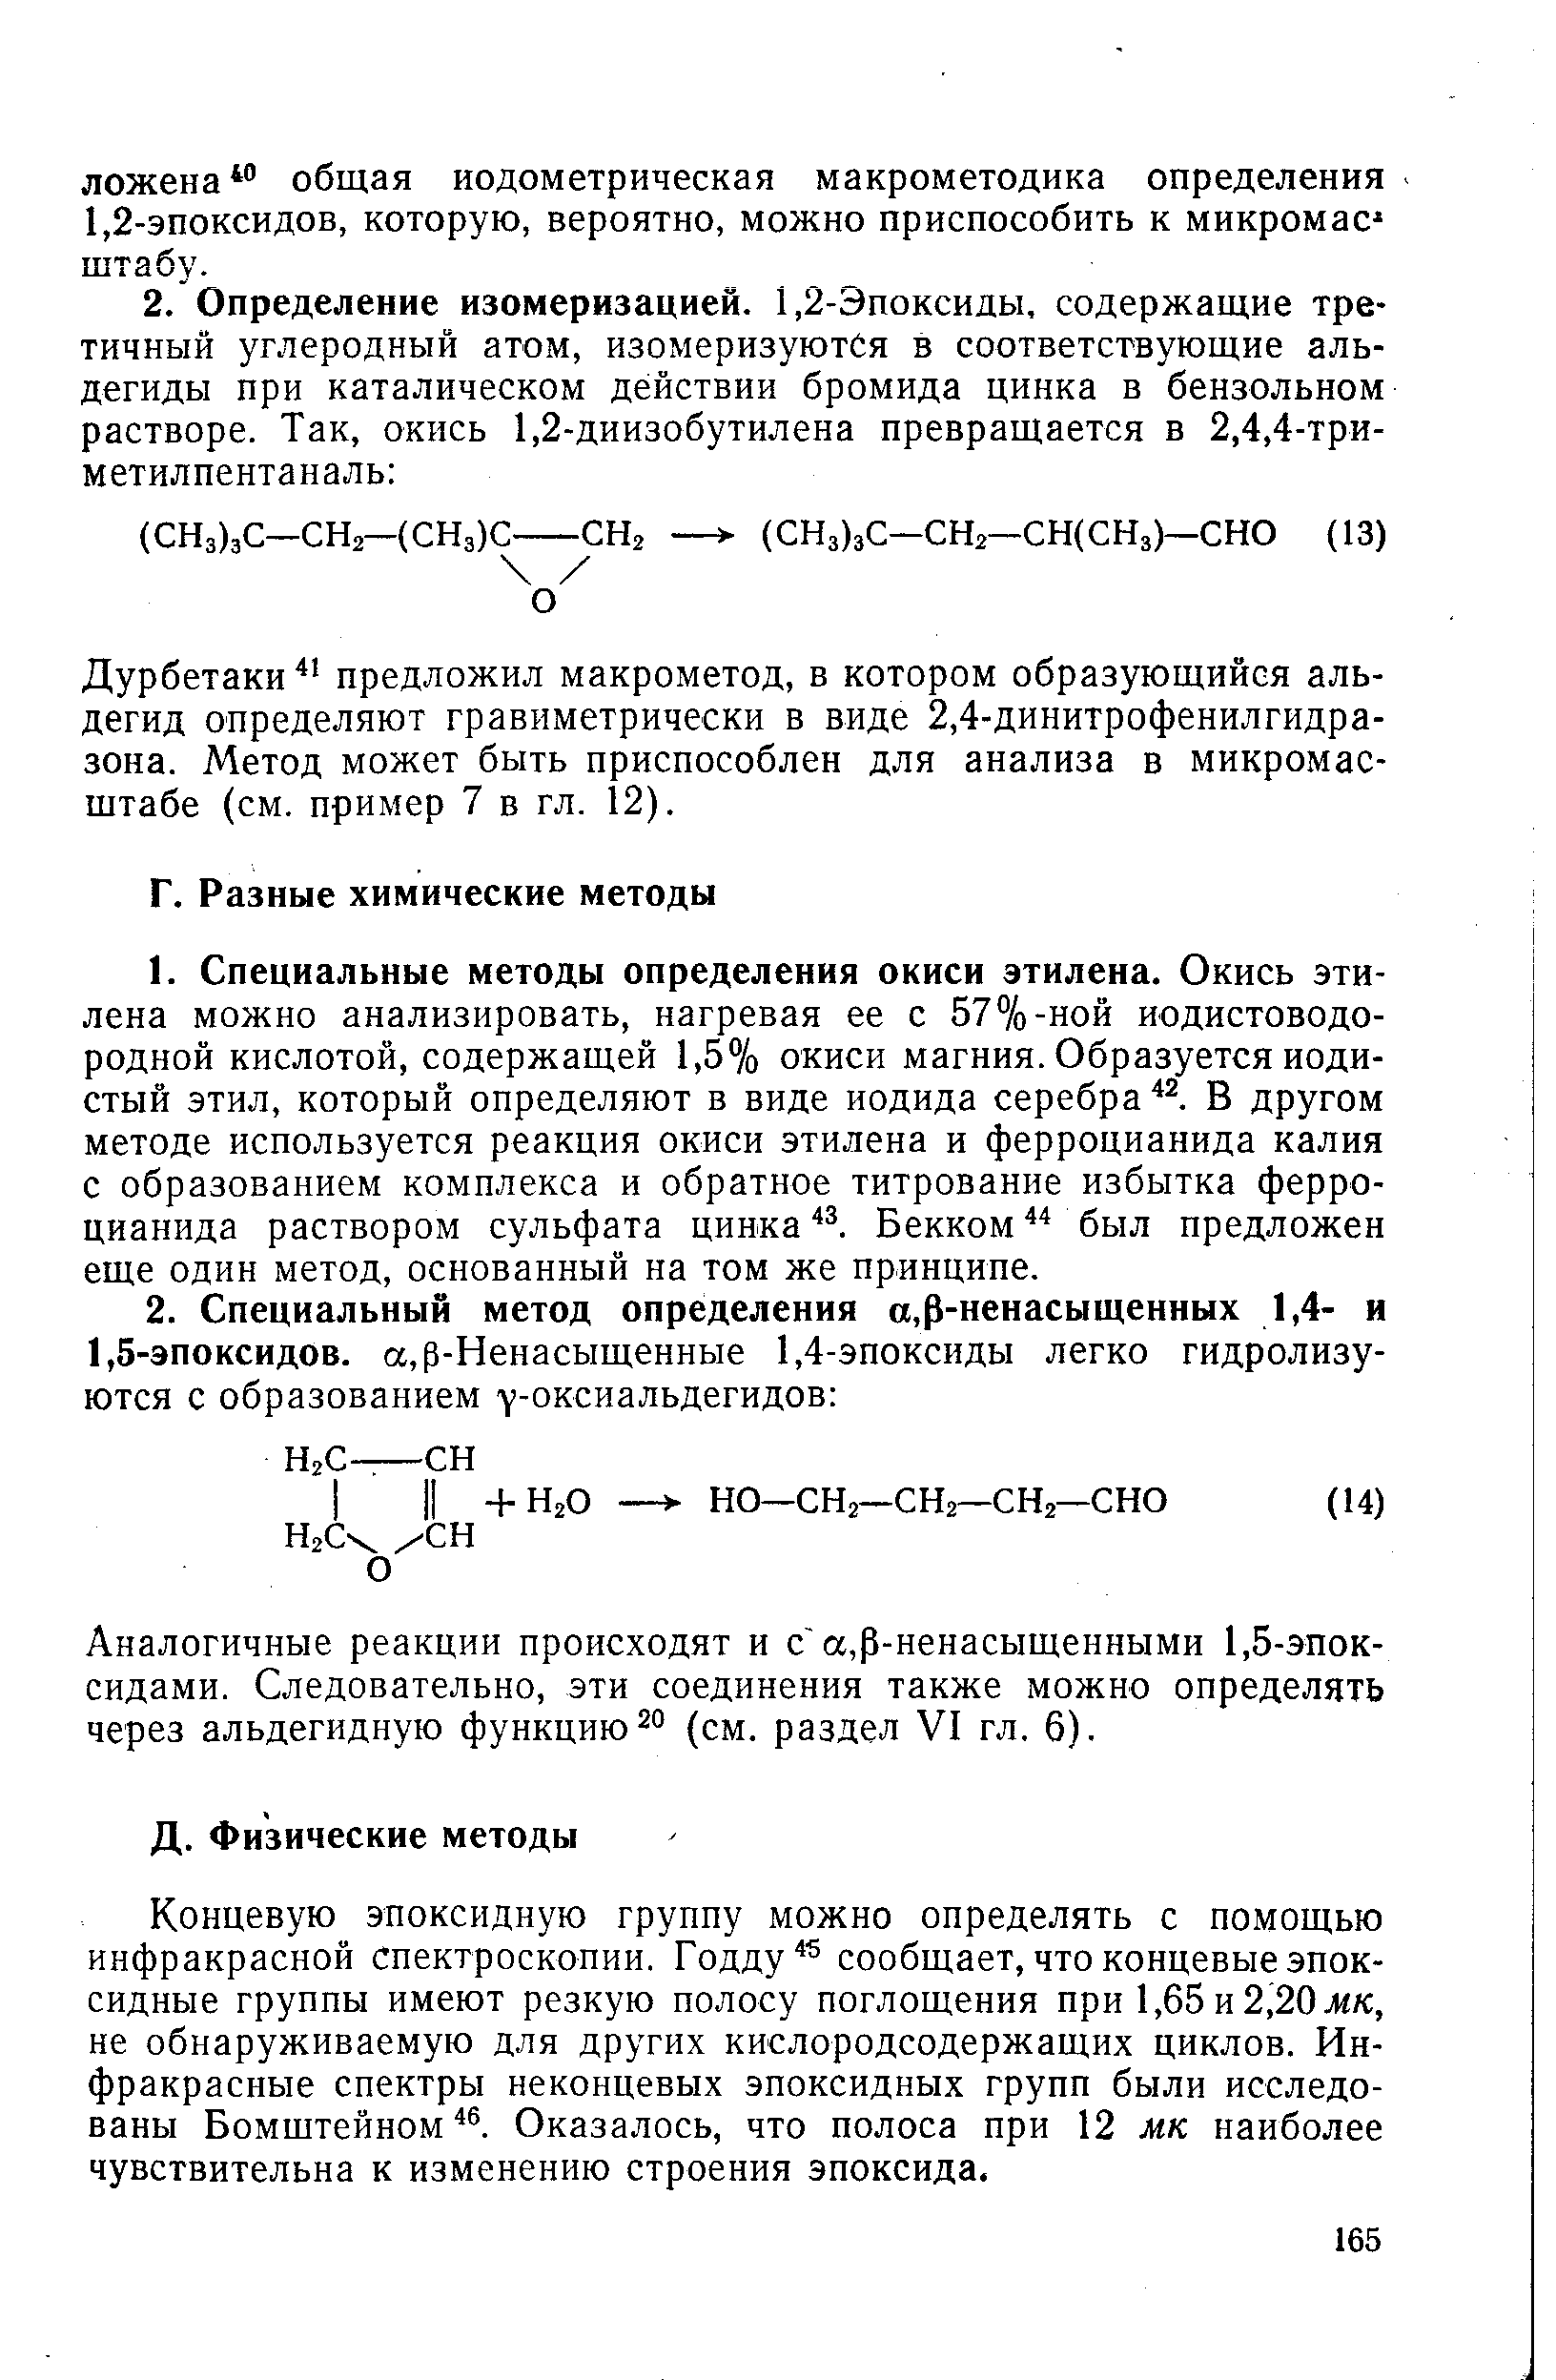 Дурбетаки предложил макрометод, в котором образующийся альдегид определяют гравиметрически в виде 2,4-динитрофенилгидразона. Метод может быть приспособлен для анализа в микромасштабе (см. пример 7 в гл. 12).